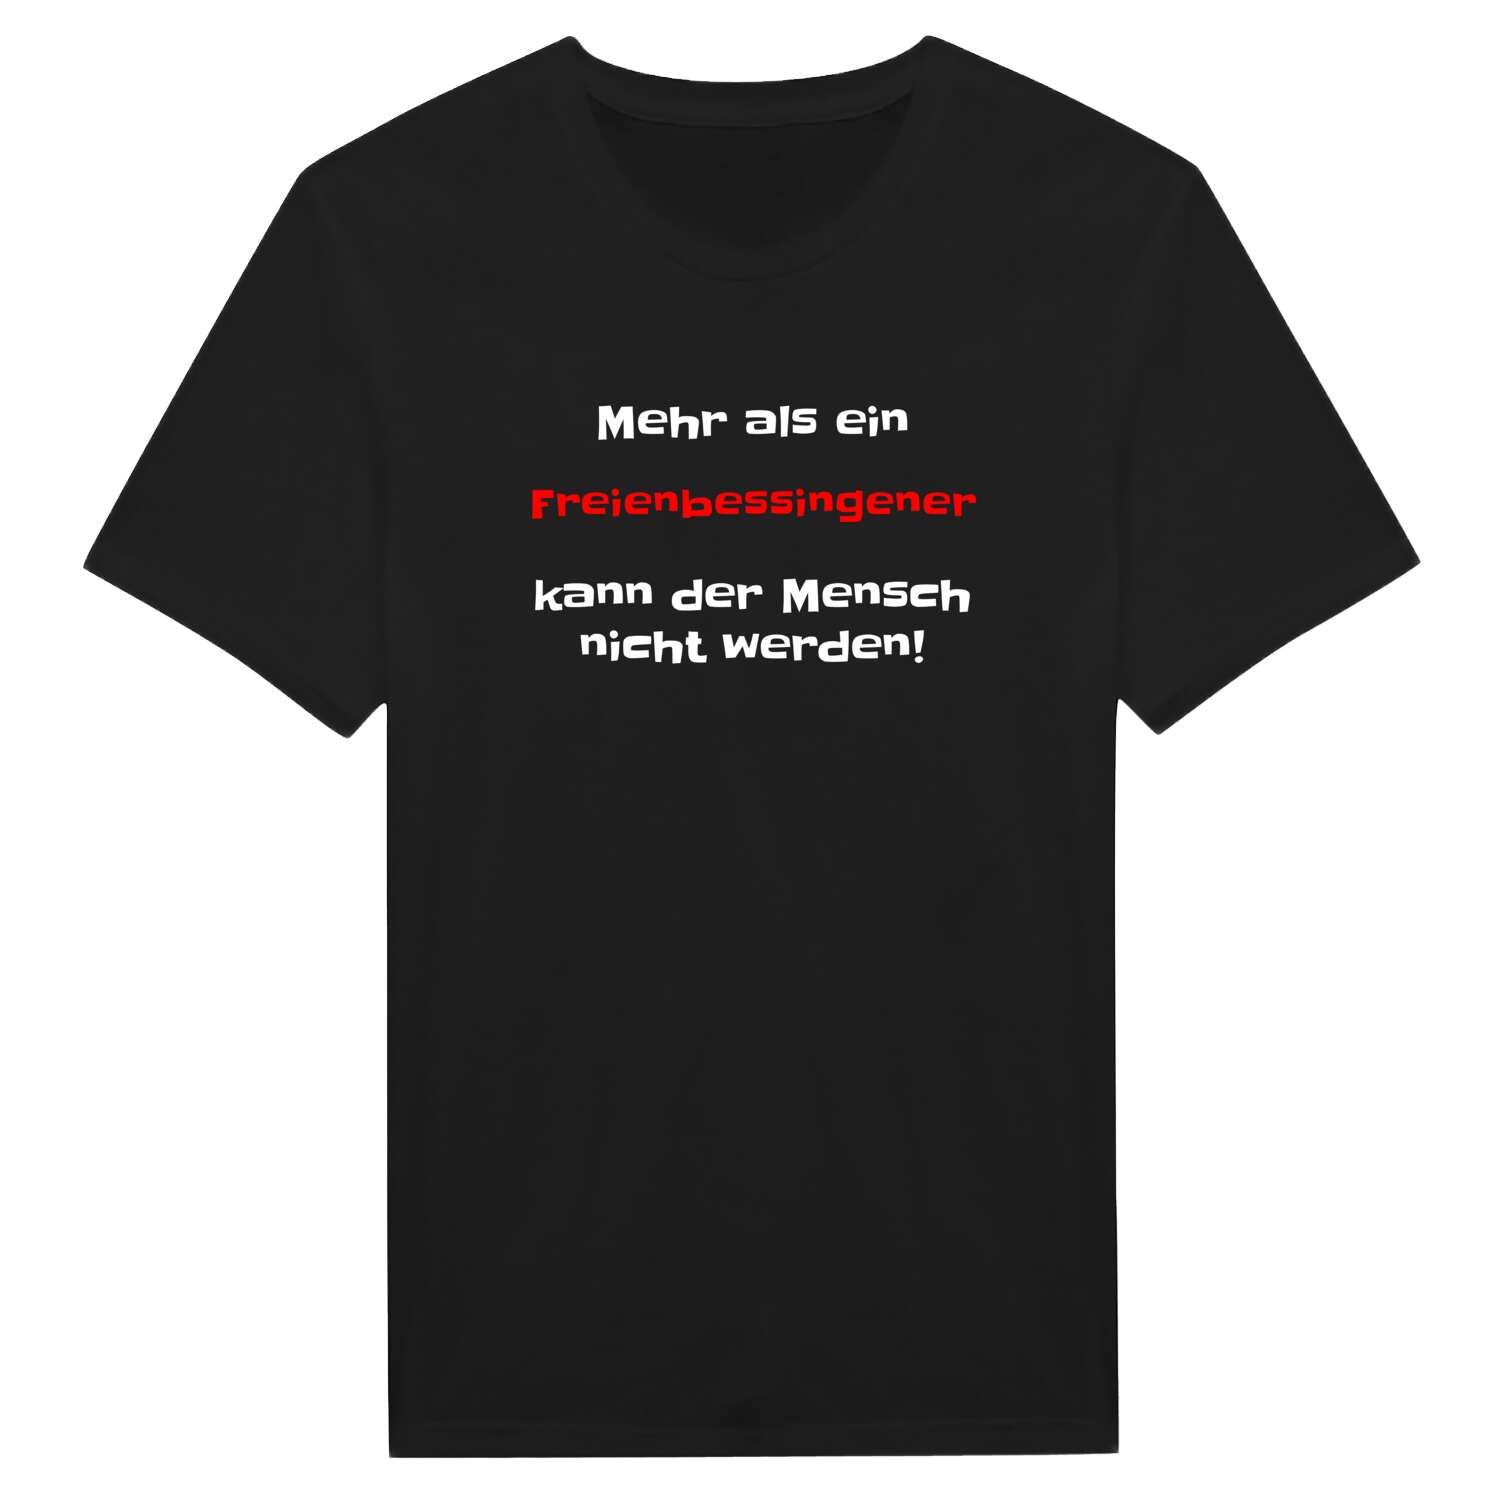 Freienbessingen T-Shirt »Mehr als ein«